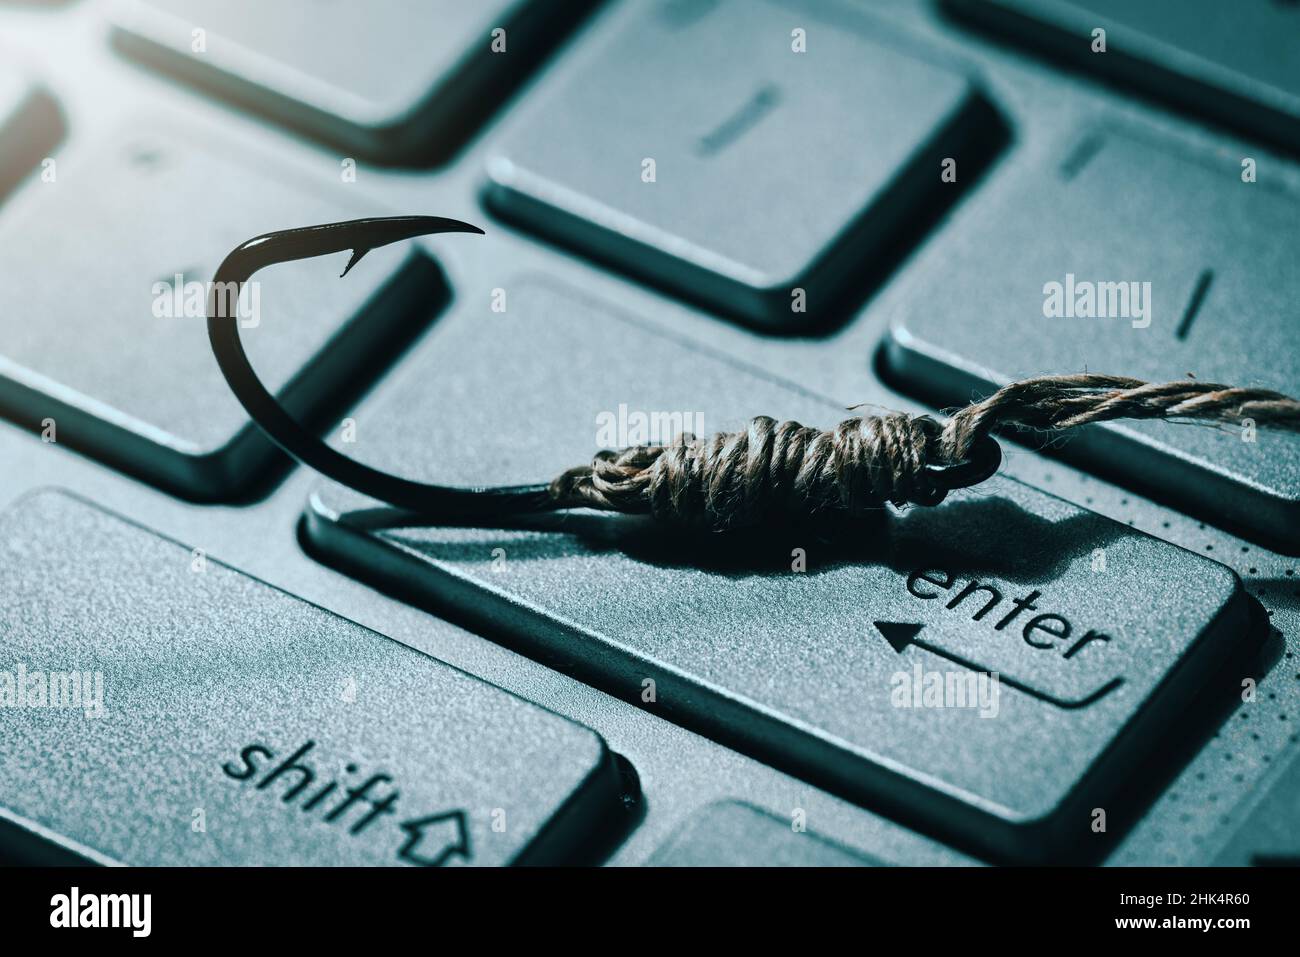 hameçonnage et cybercriminalité. crochet de pêche sur le clavier de l'ordinateur Banque D'Images